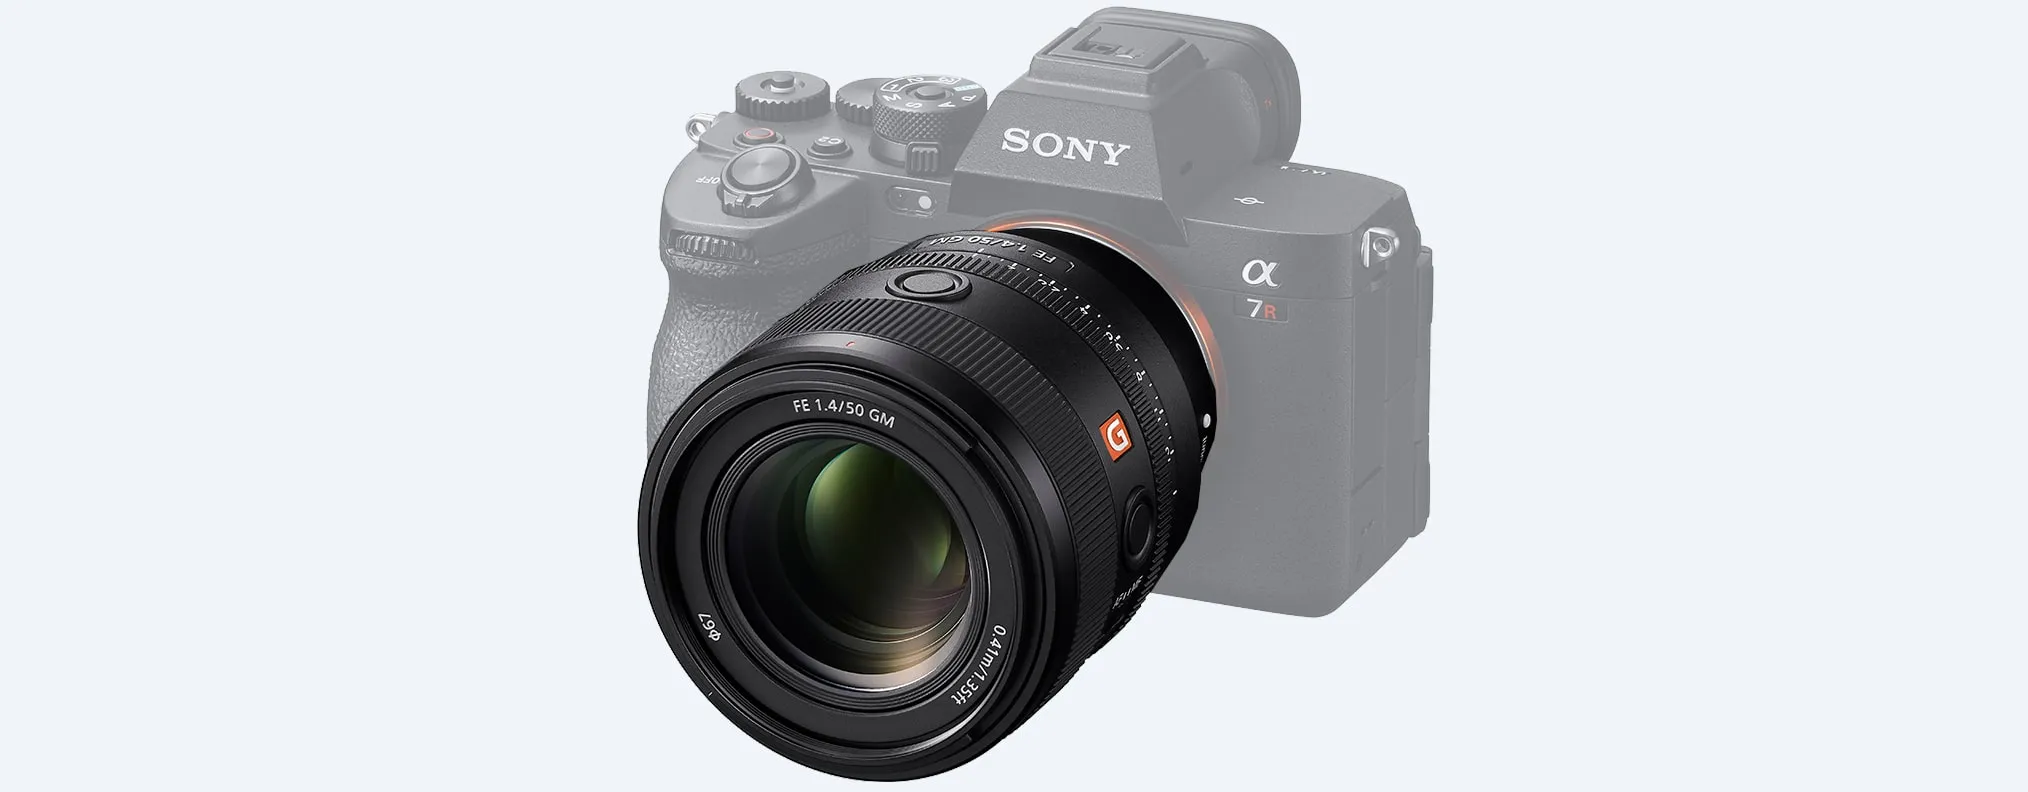 Ống kính Sony FE 50mm F1.4 GM